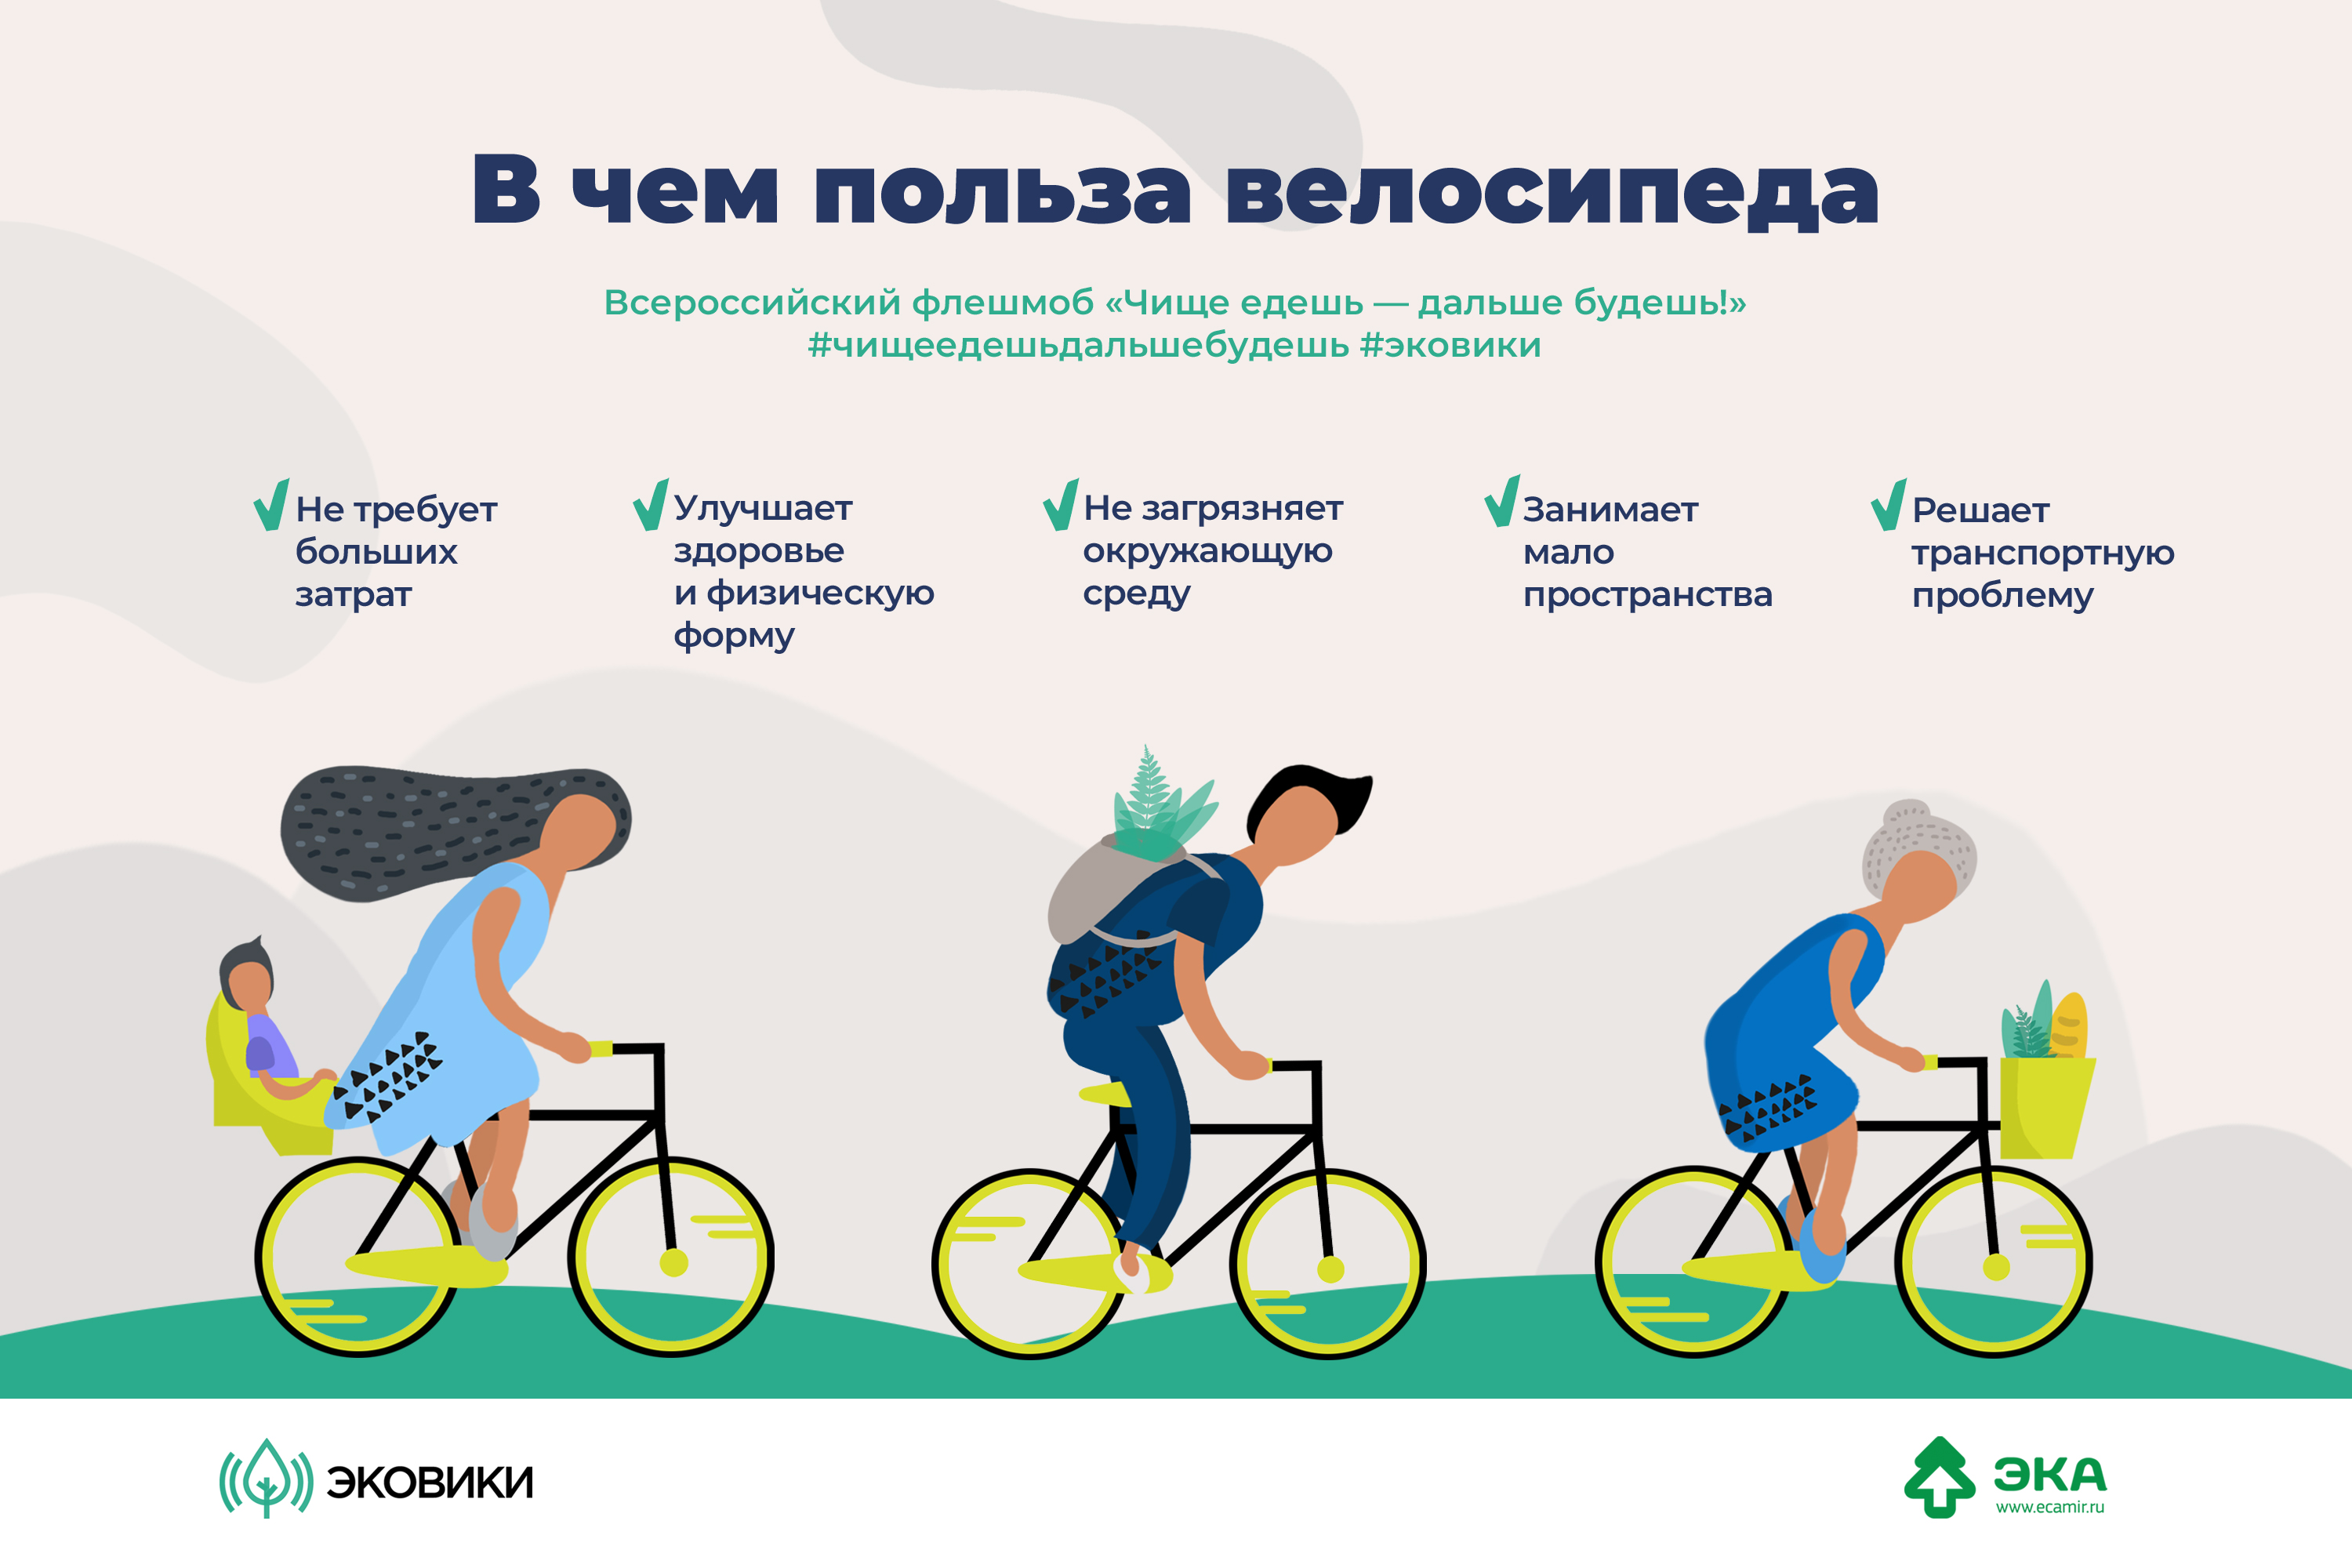 Ездить насколько. Польза велосипеда. Езда на велосипеде польза. Велосипед и здоровье. Велосипед полезно для здоровья.